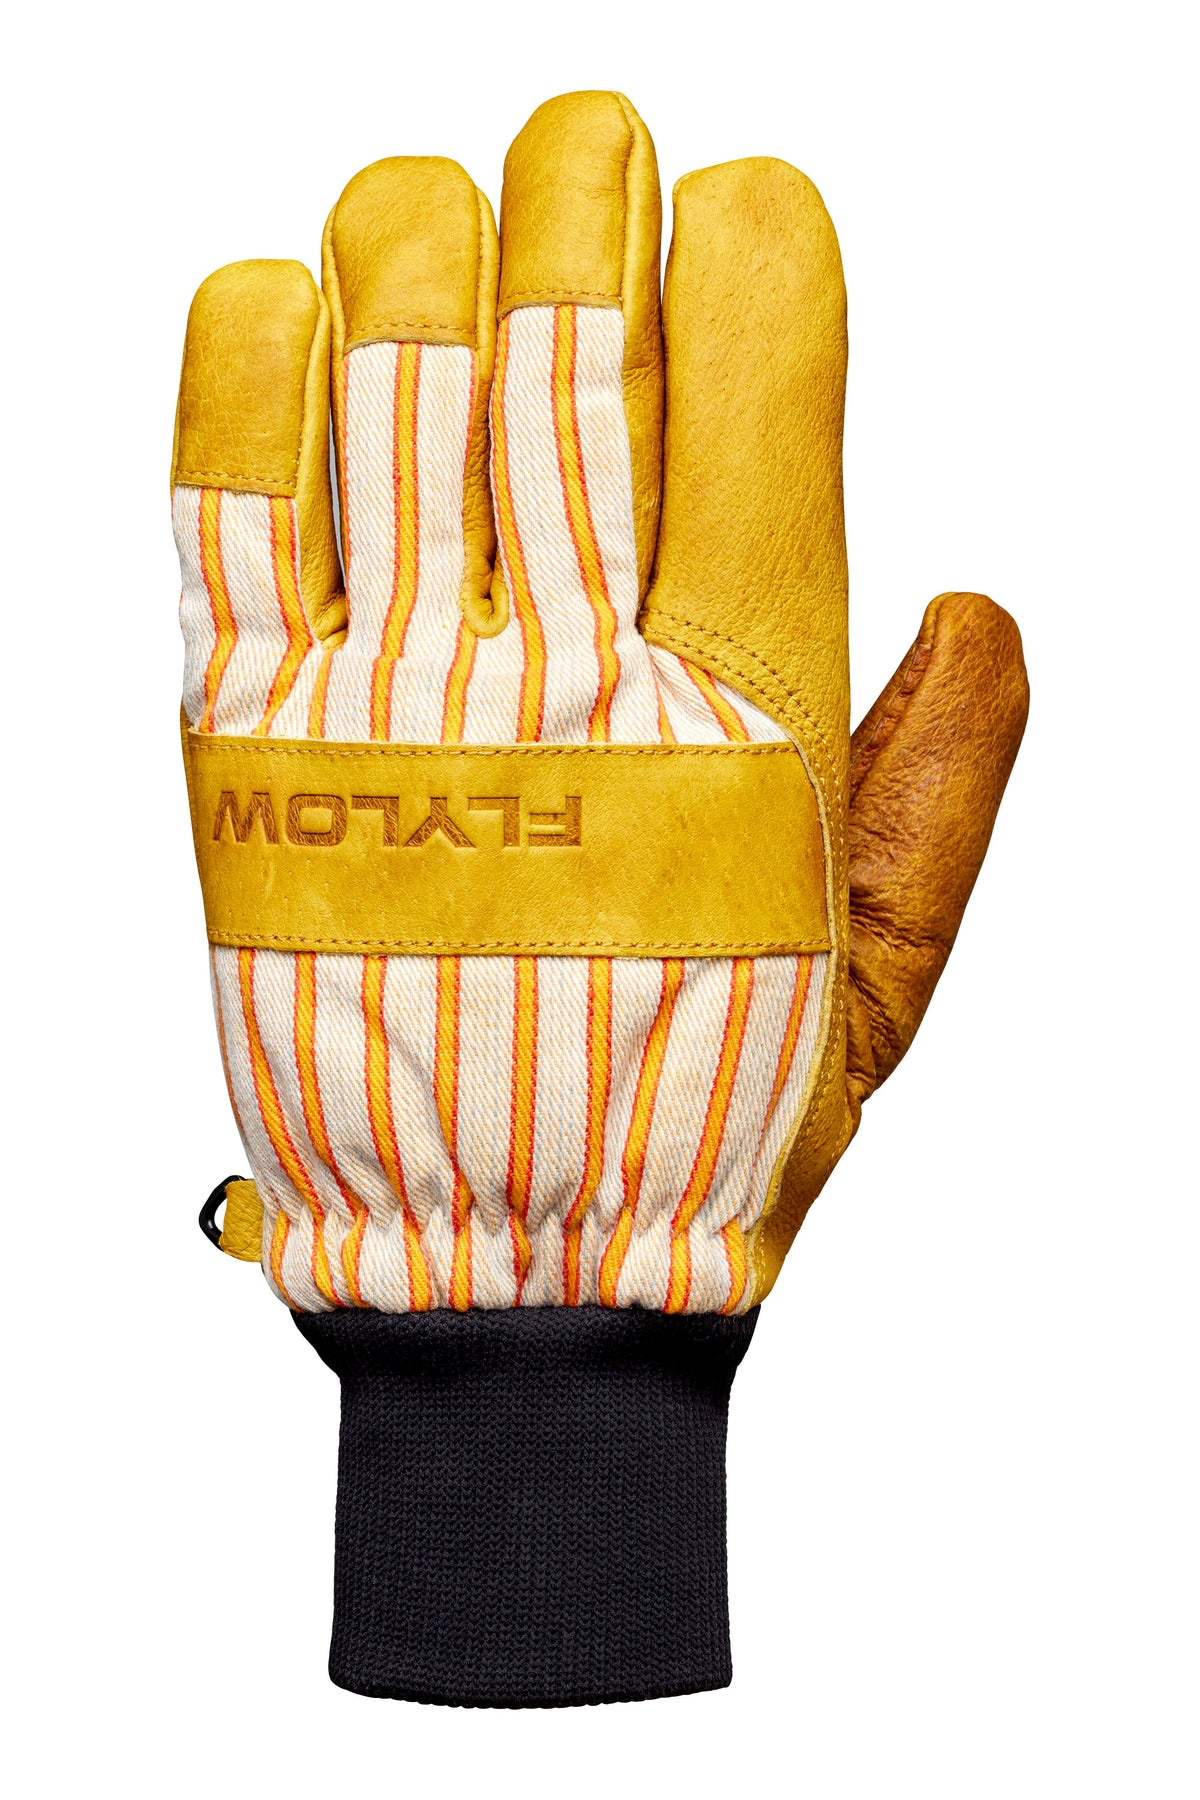 Tough Guy Glove OG Baked - Leather Ski Gloves | Flylow Gear